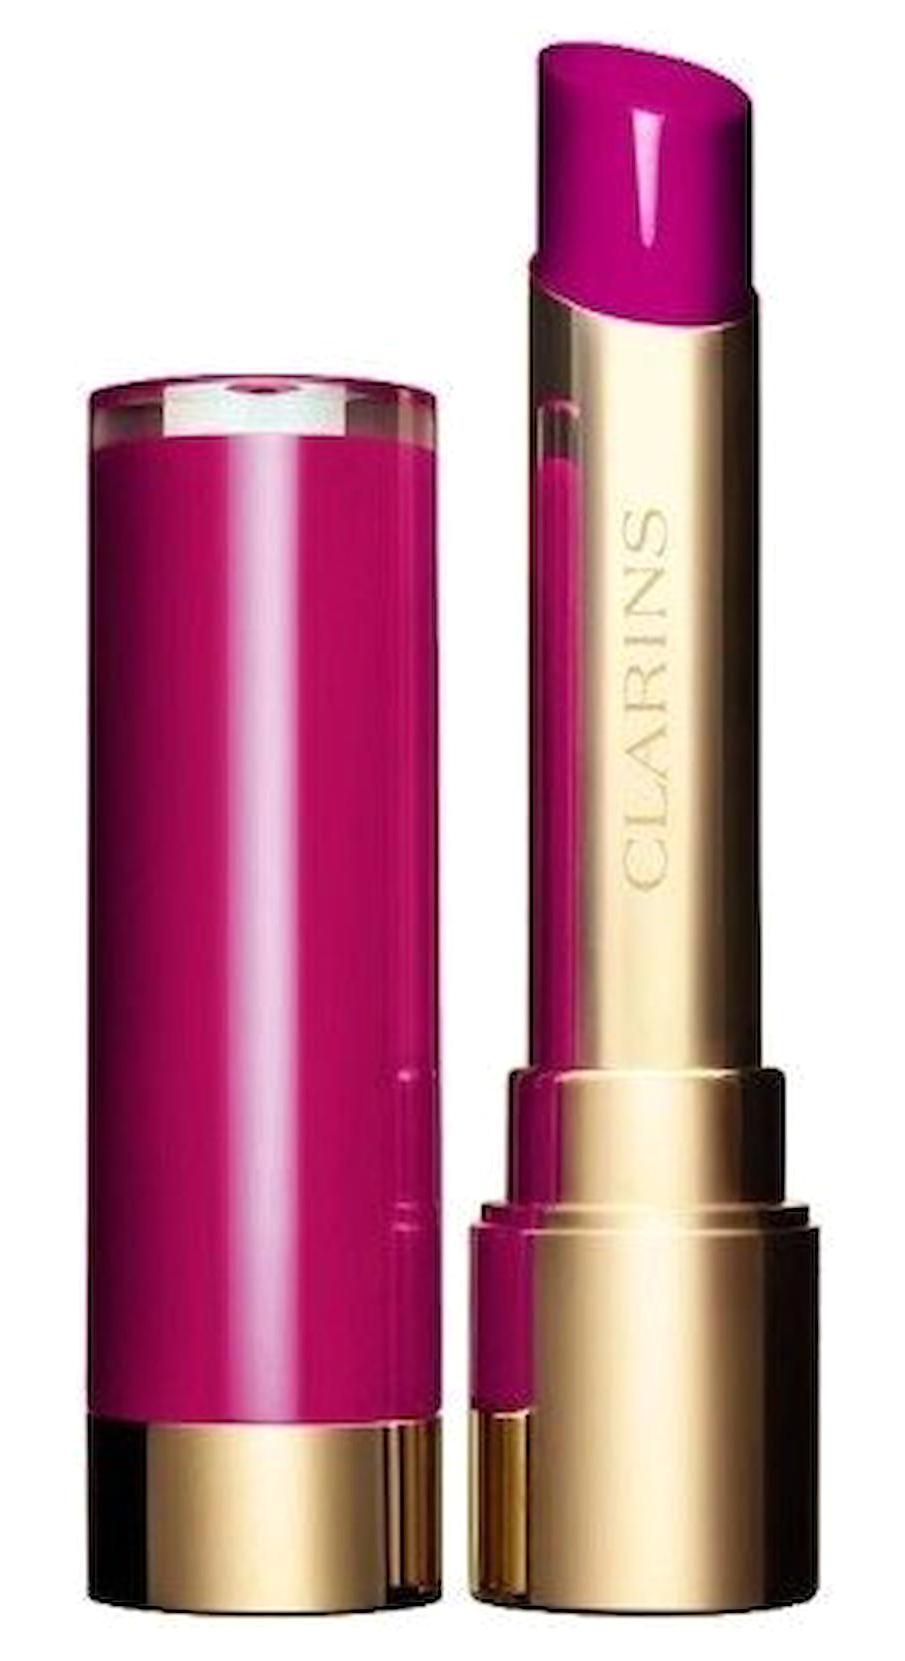 Clarins 762L Pop Pink Kalıcı Dudak Dolgunlaştırıcı Parlak Krem Lipstick Ruj